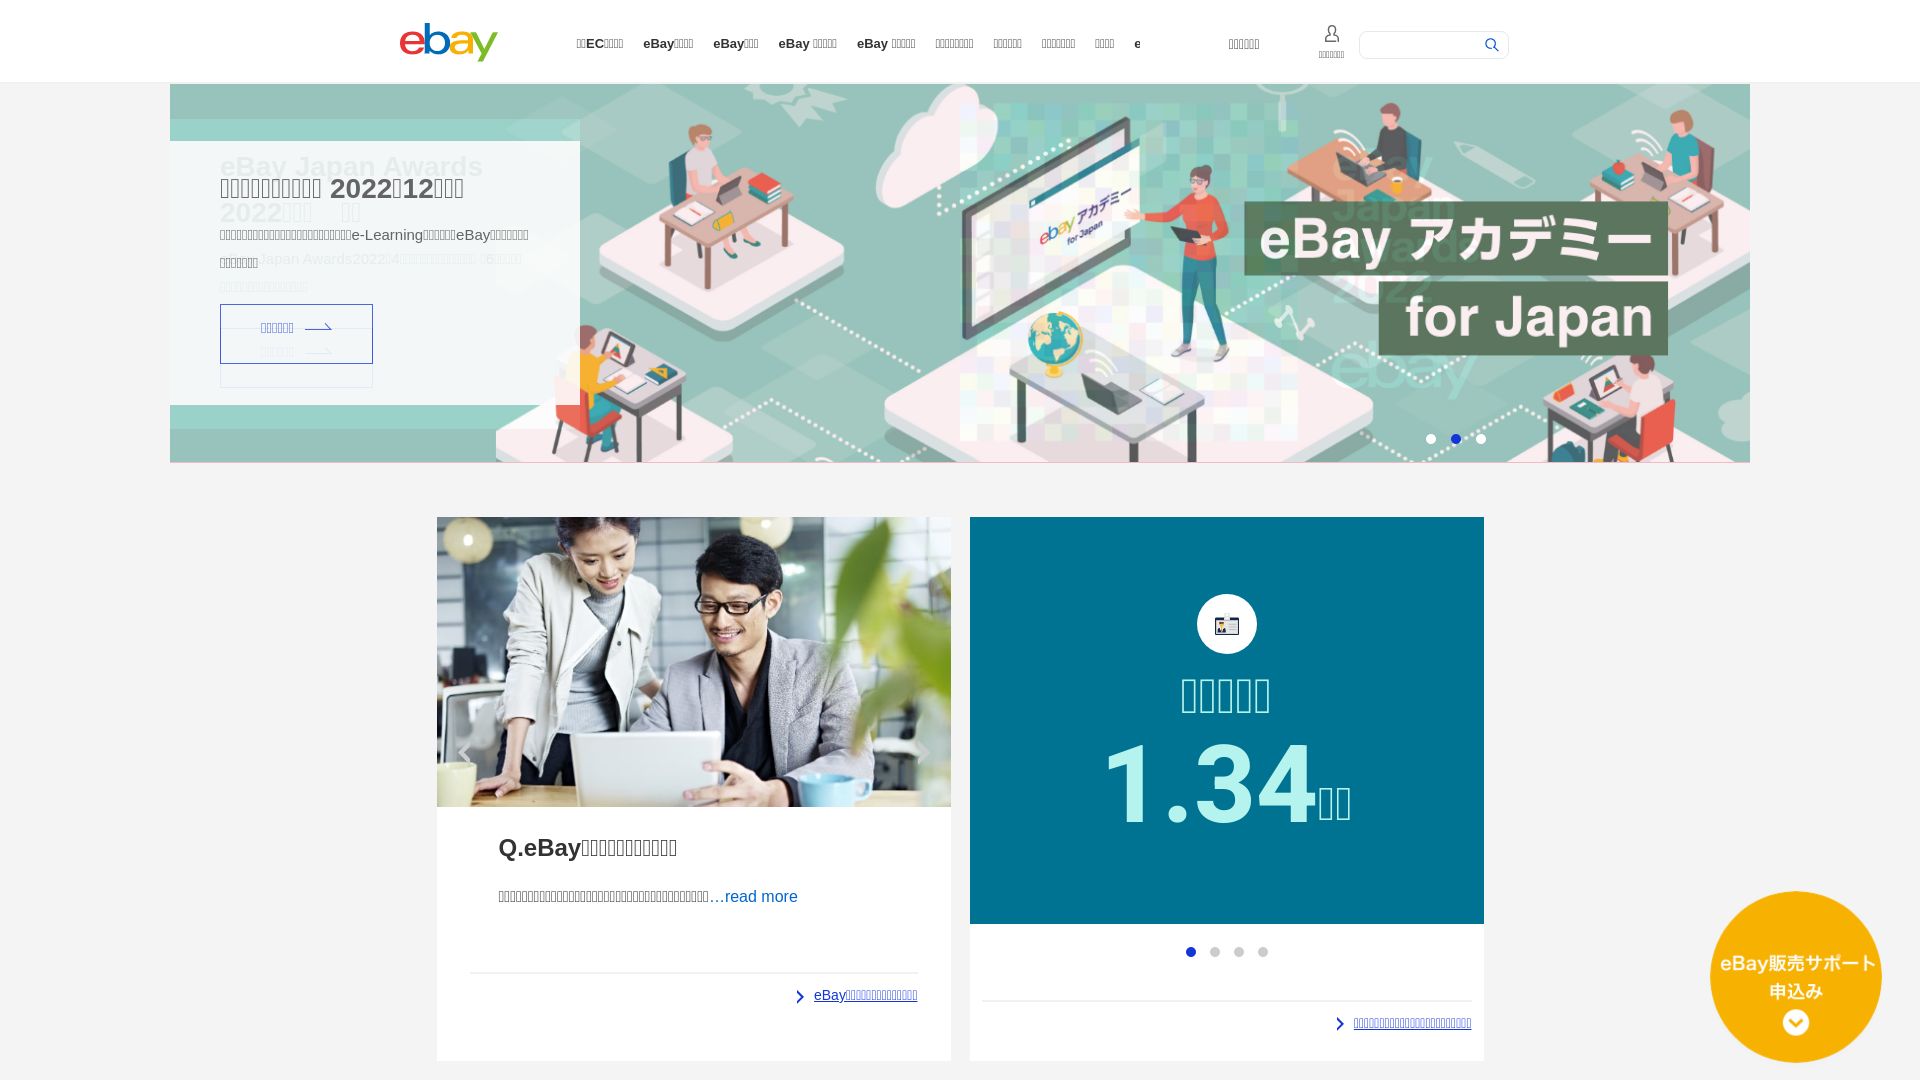 Stato del sito web ebay.co.jp è   ONLINE